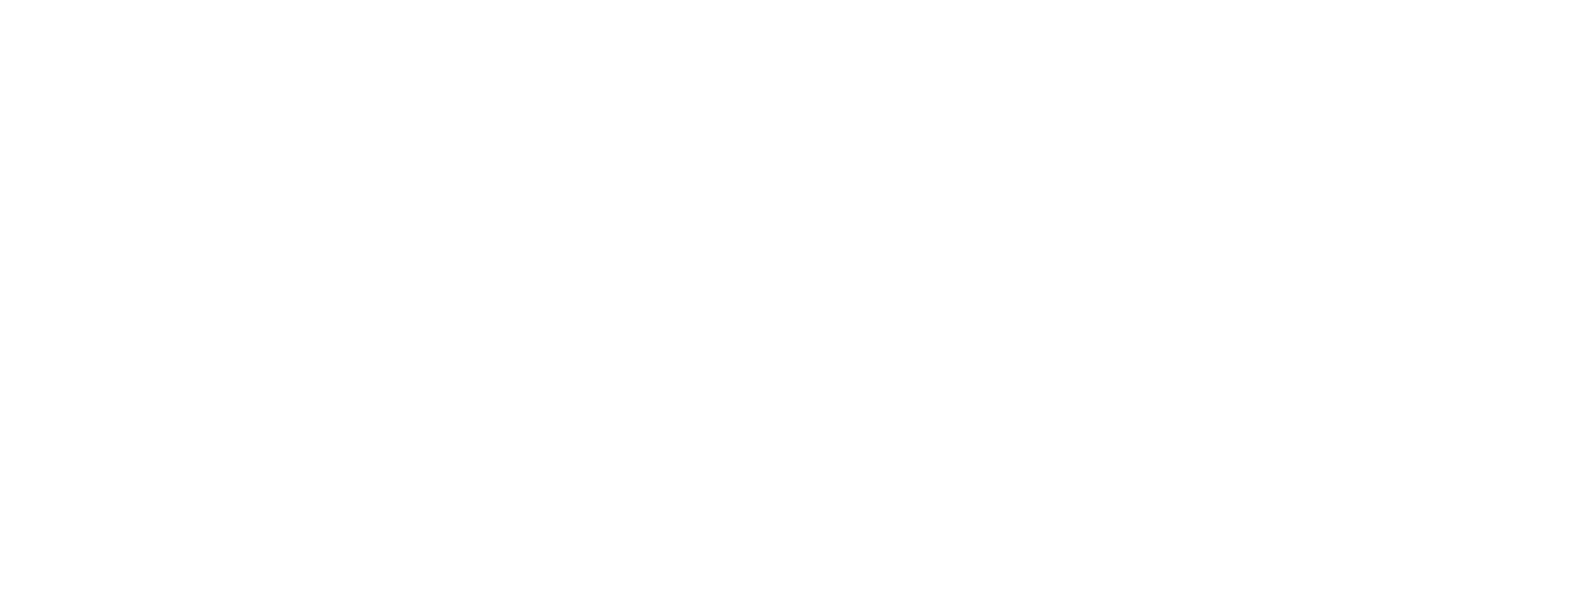 Phillips Edison & Company logo grand pour les fonds sombres (PNG transparent)